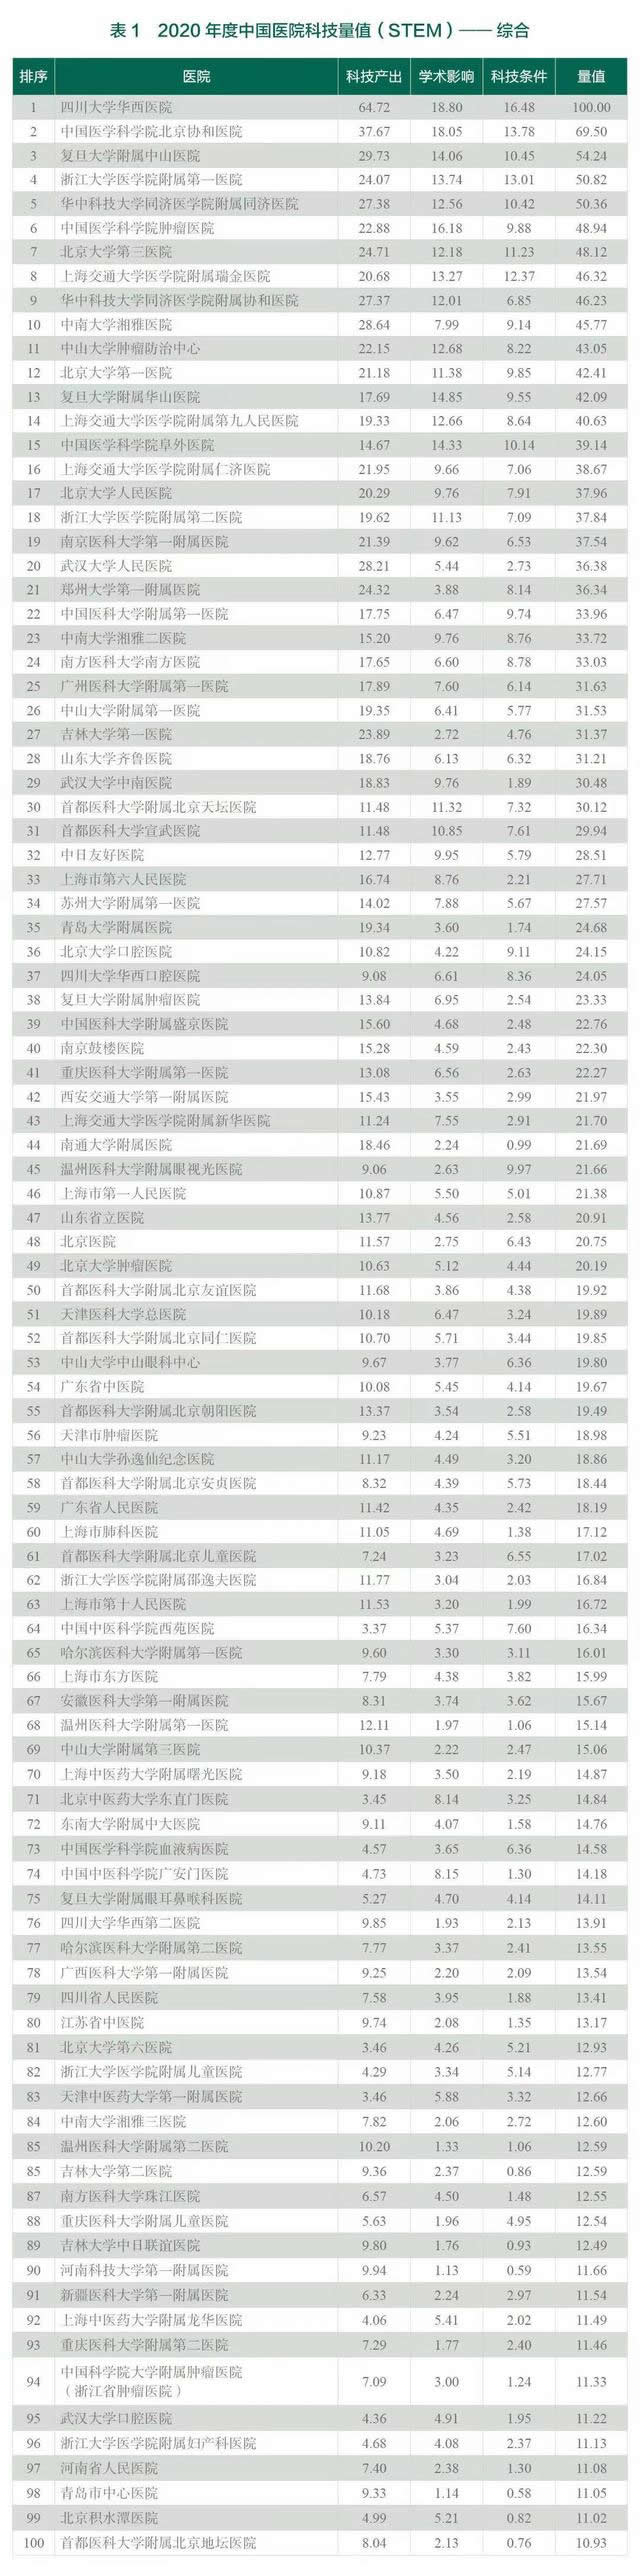 2020年度中国医院科技量值发布,华西医院连续八年综合排名第一播(图1)